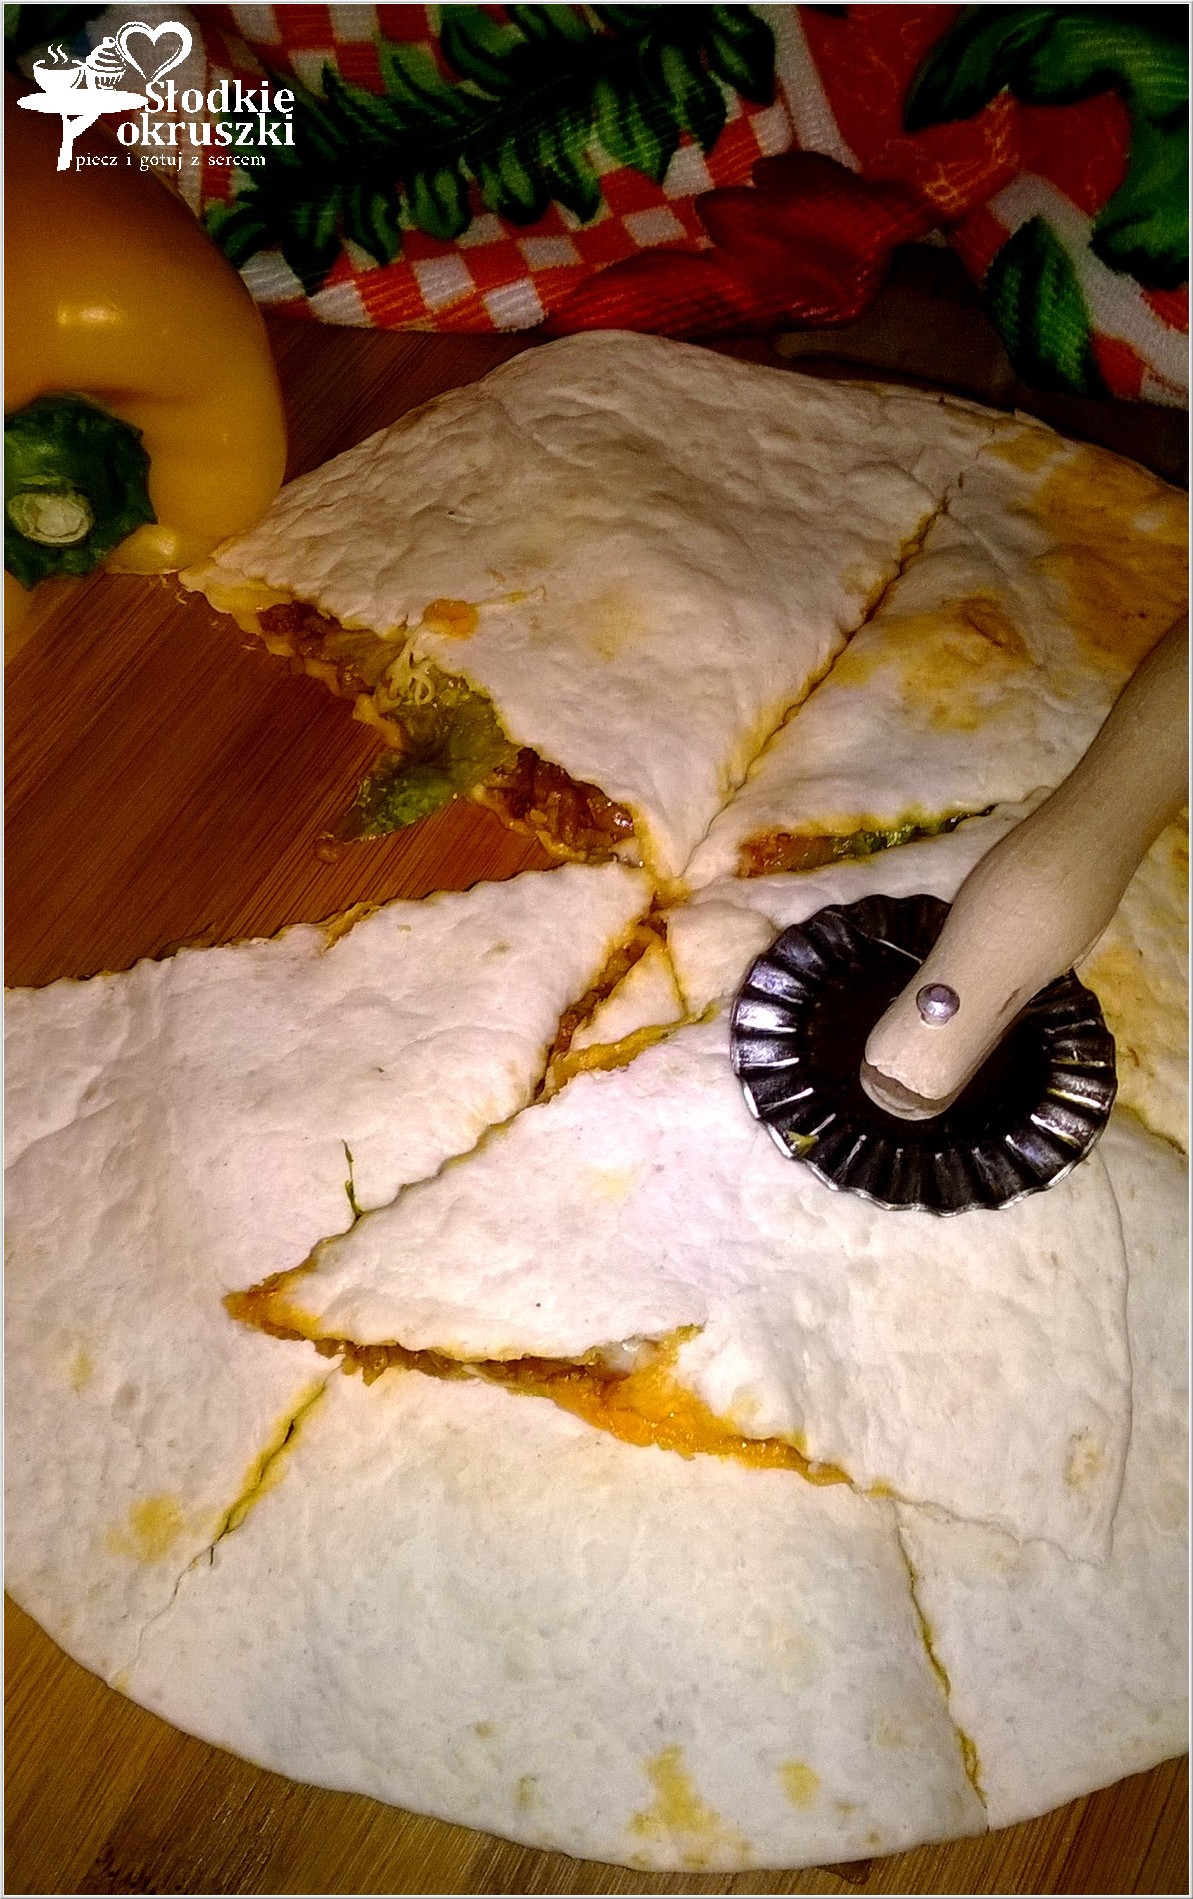 Nadziewana tortilla a la pizza z mięsem mielonym, serem i sałatą